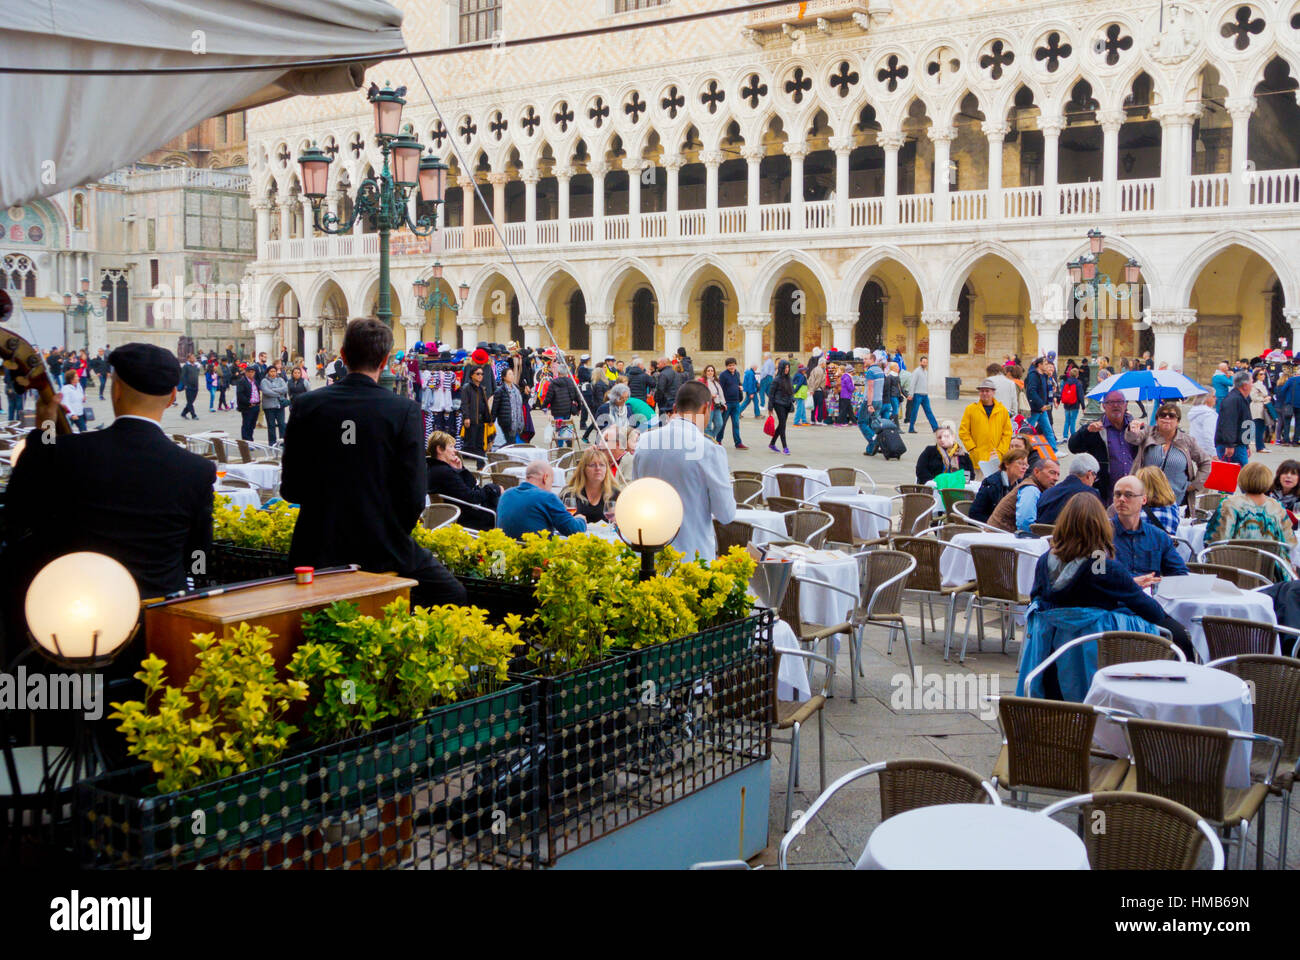 Caffe Chioggia, Piazzetta, San Marco, Venice, Veneto, Italy Stock Photo